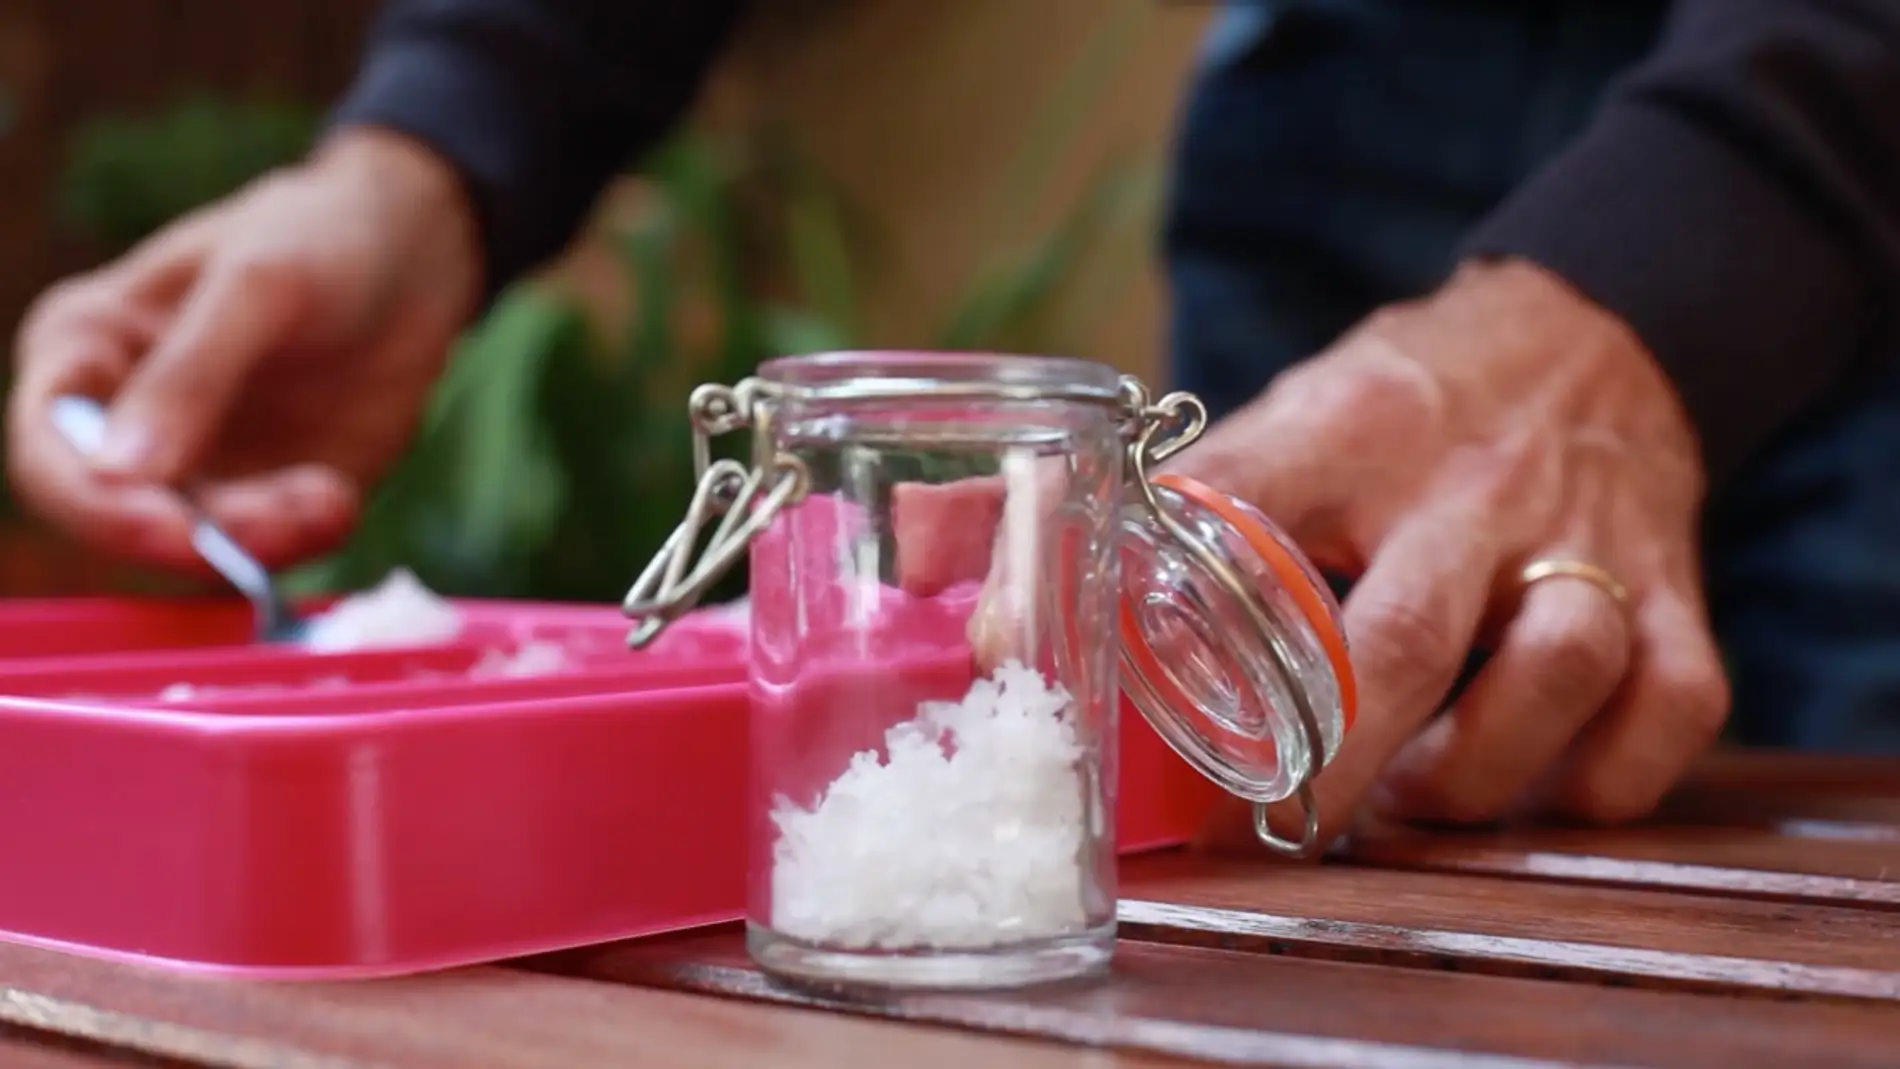 Foodies, lo de hacerse sal en casa ya es una realidad.